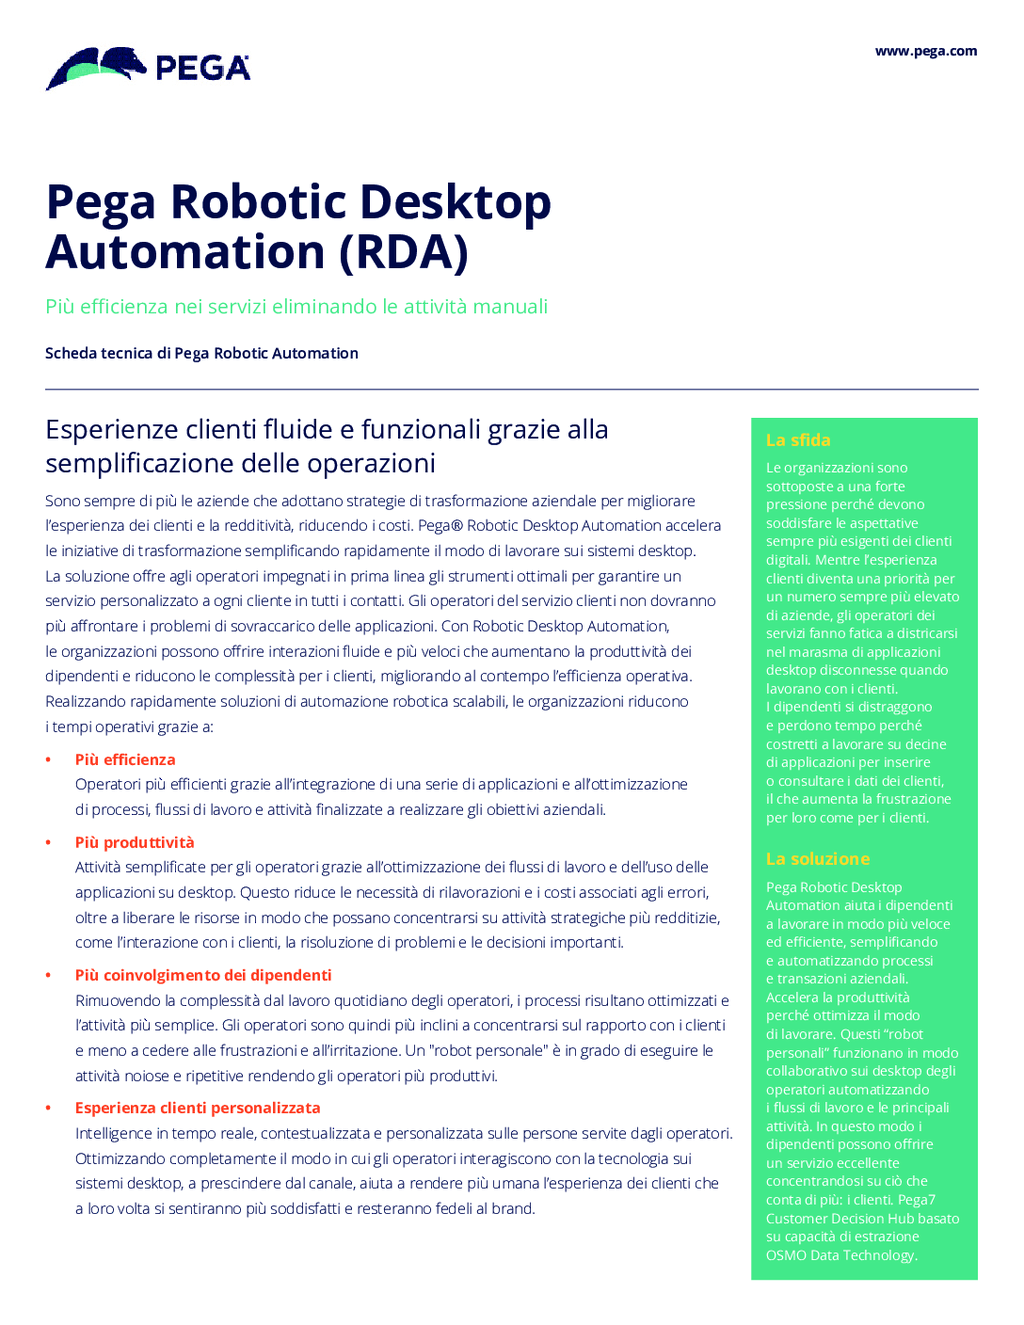 Automazione robotica per applicazioni desktop del team